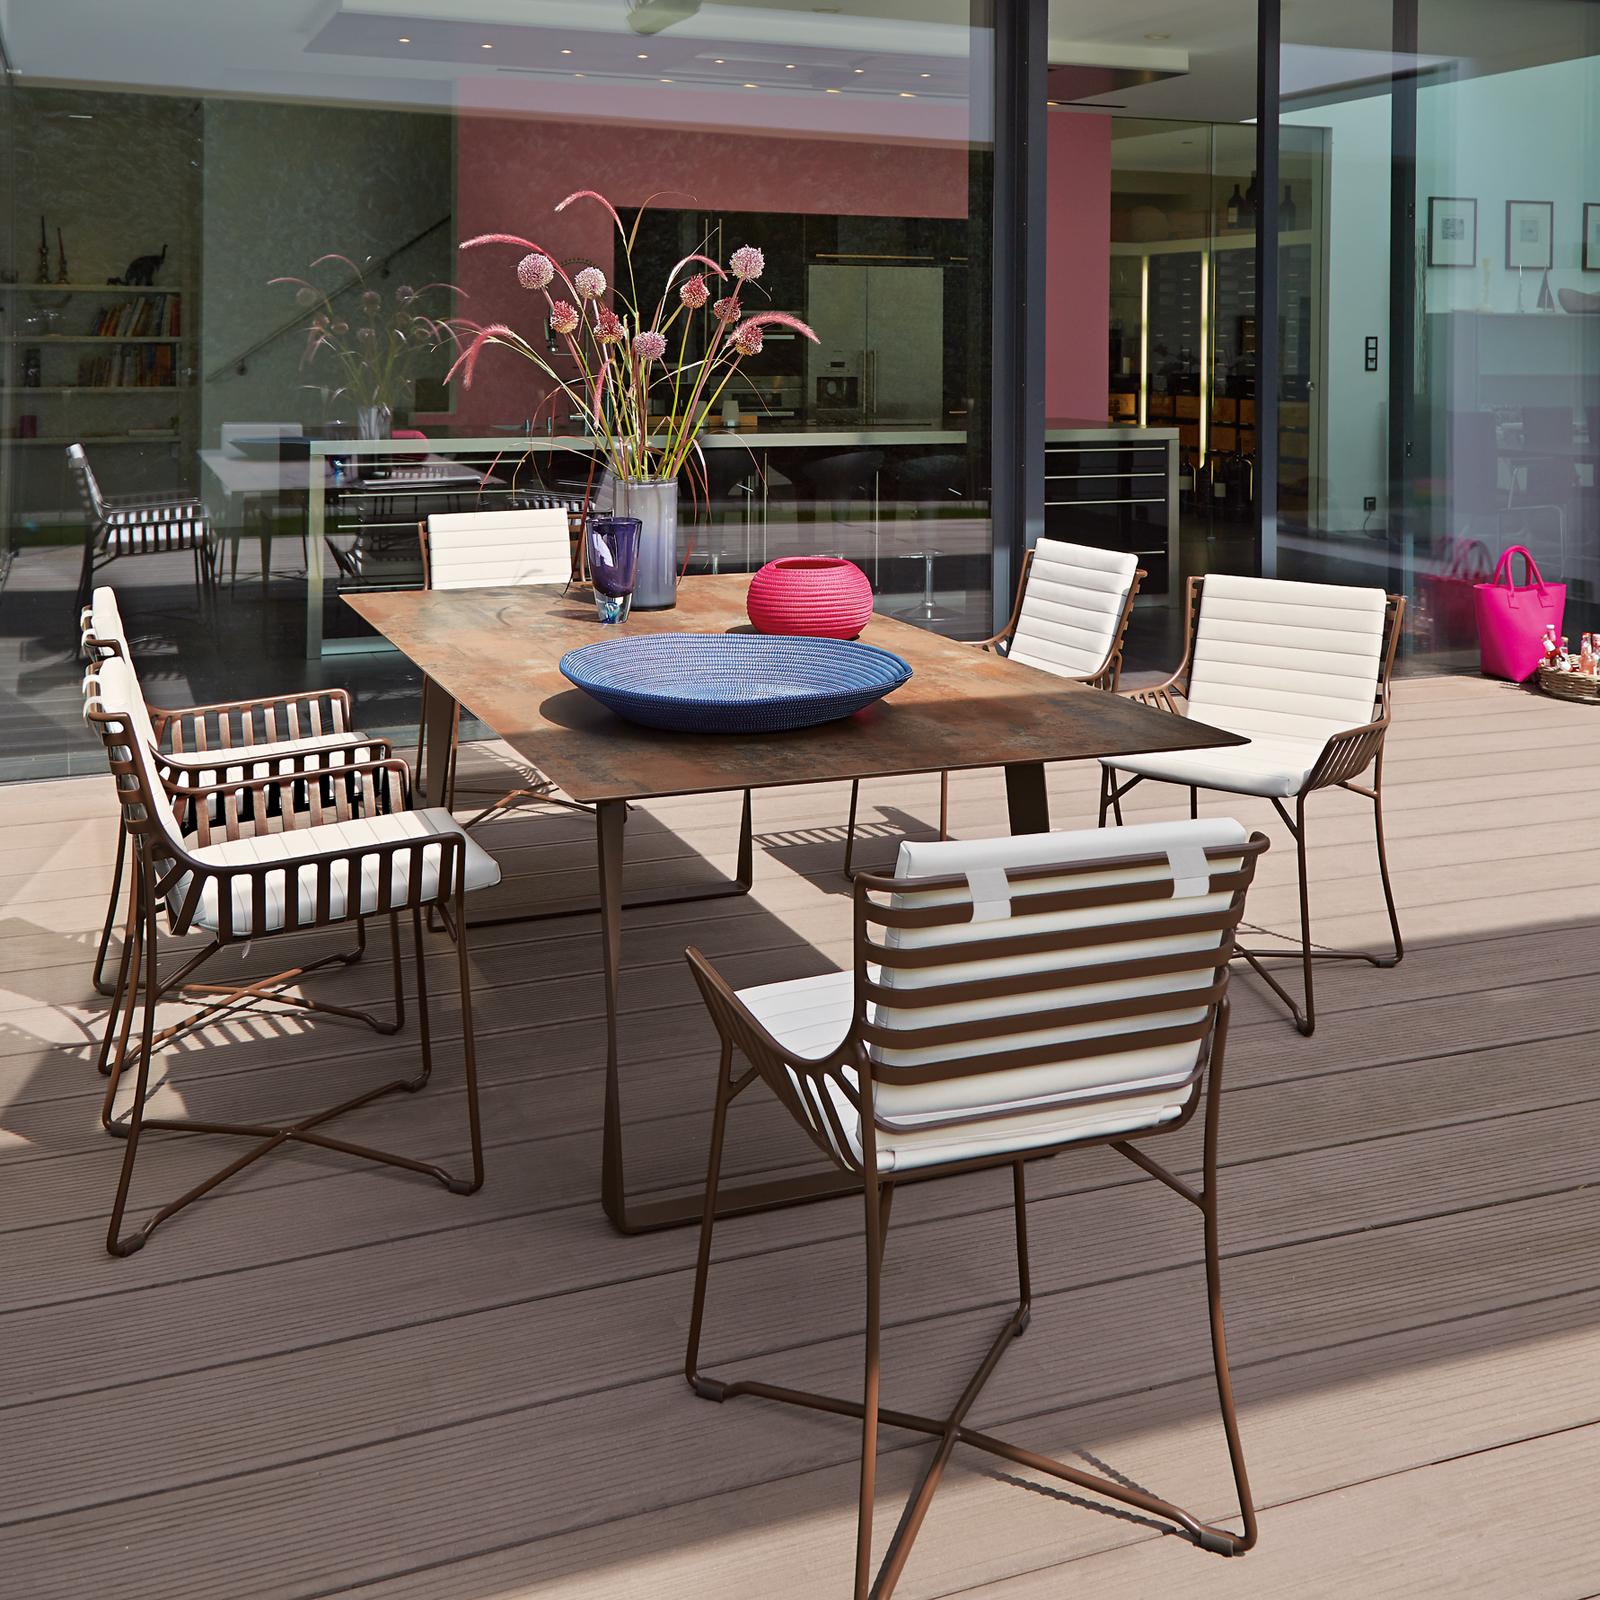 Esstisch und Stühle in Rost-Optik #terrasse #shabbychic #gartenmöbel ©Garpa